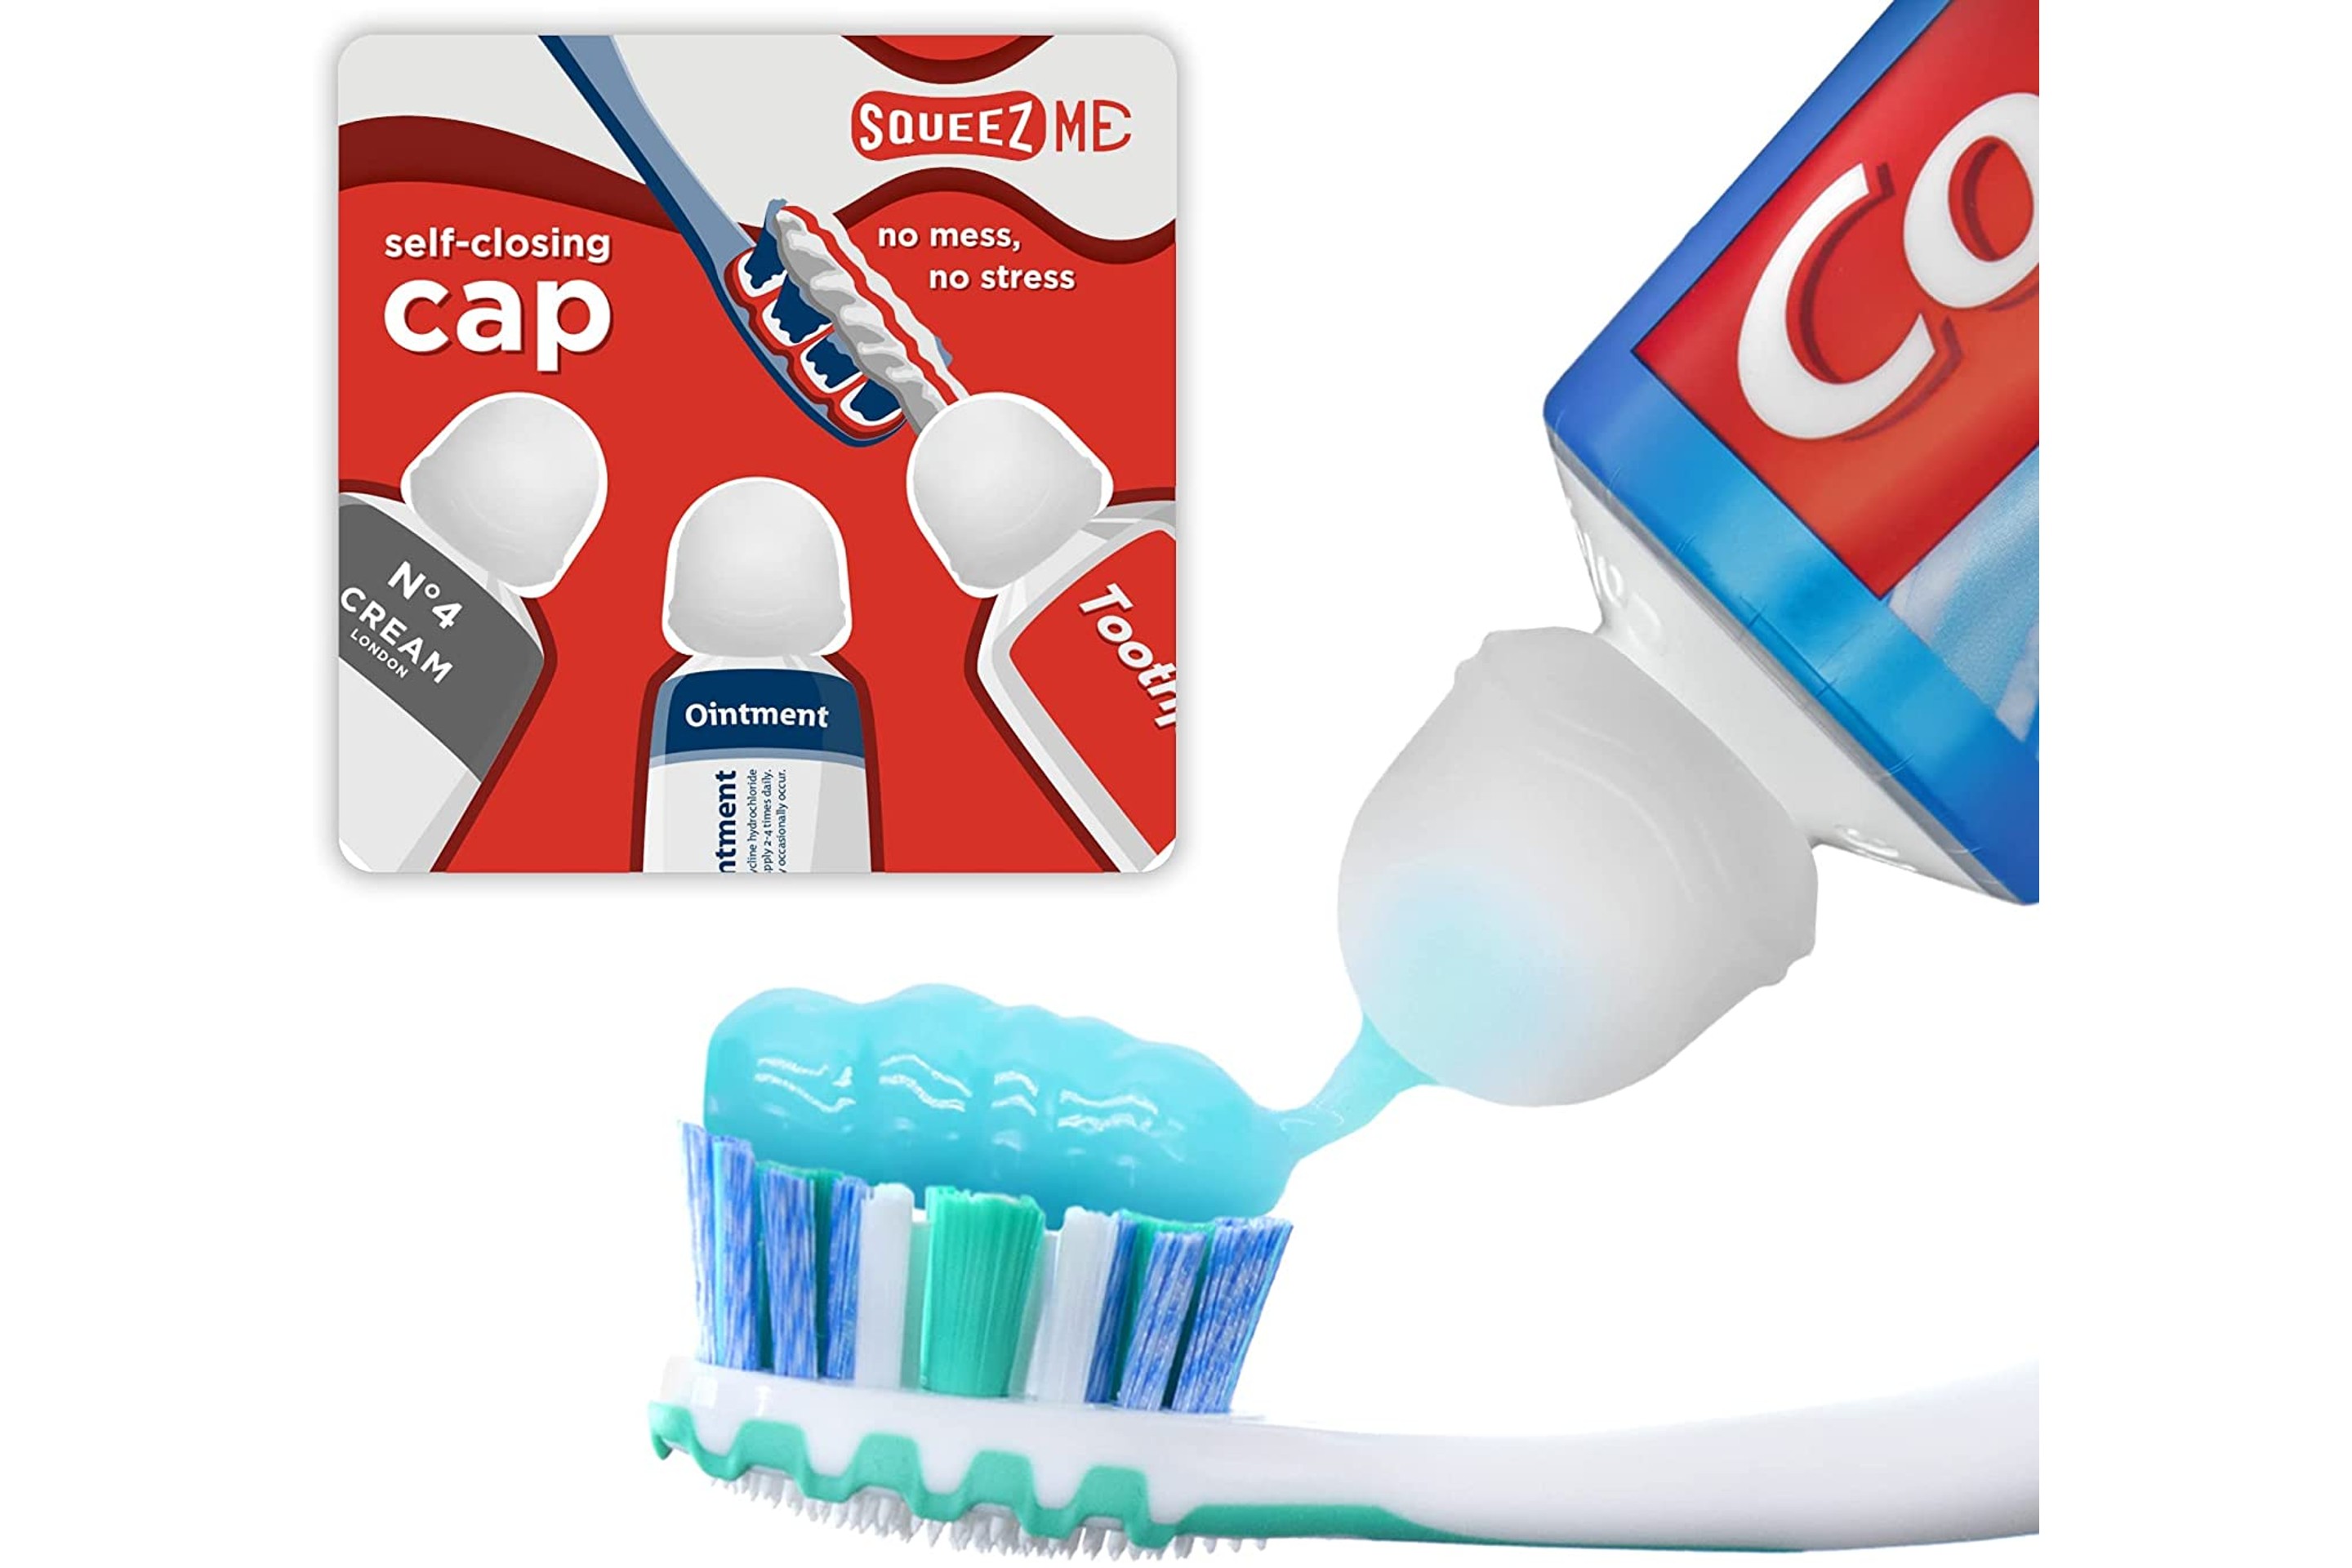 Self-Closing Toothpaste Caps